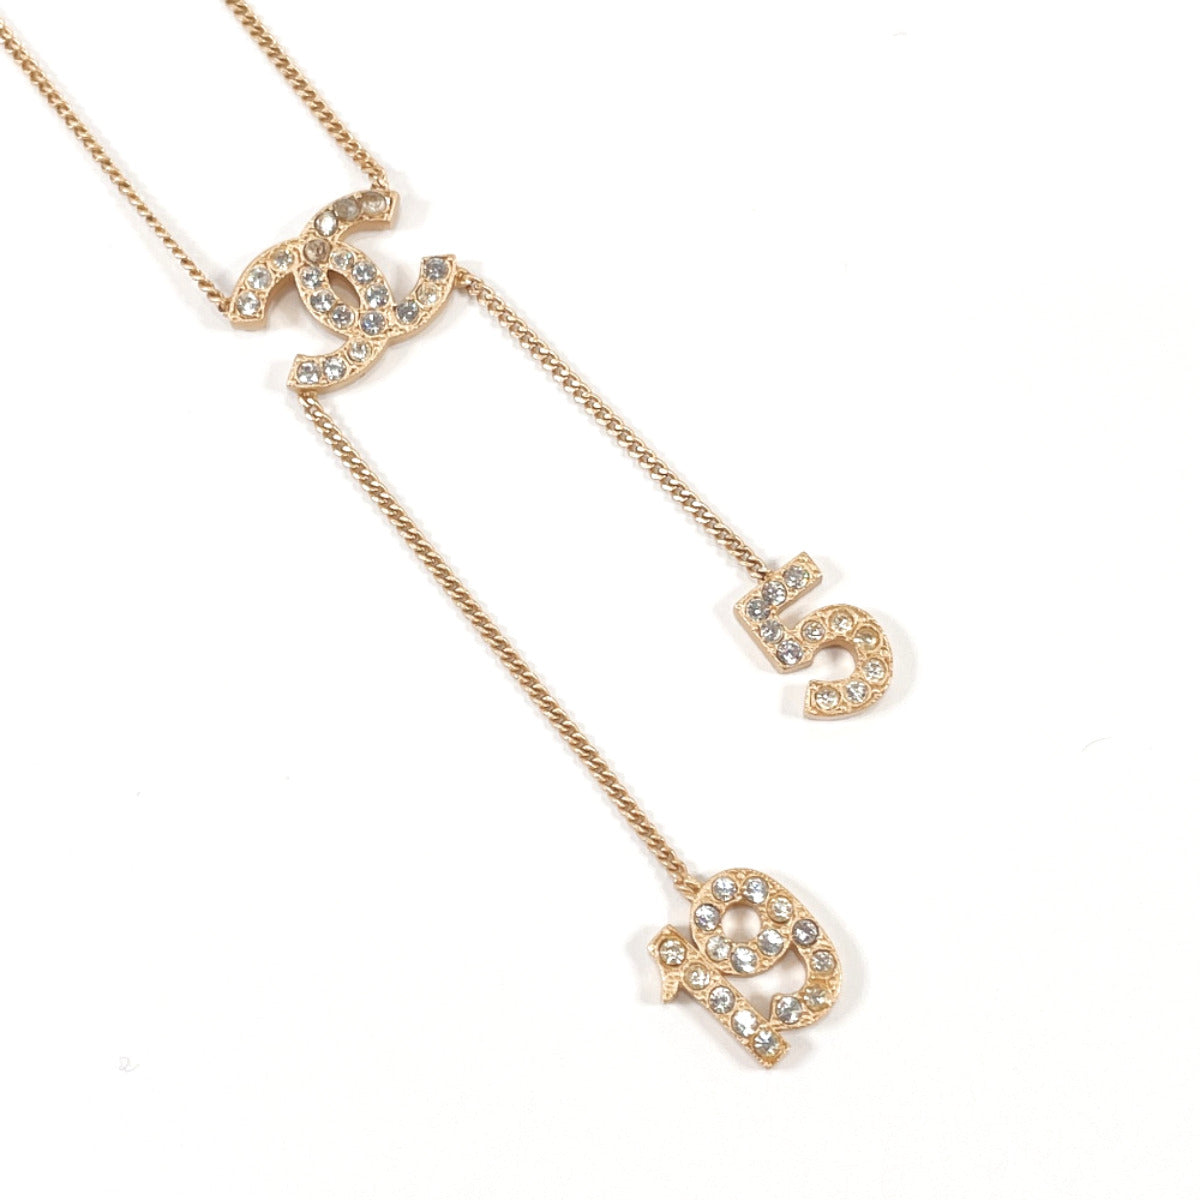 Chanel Replica Necklaces